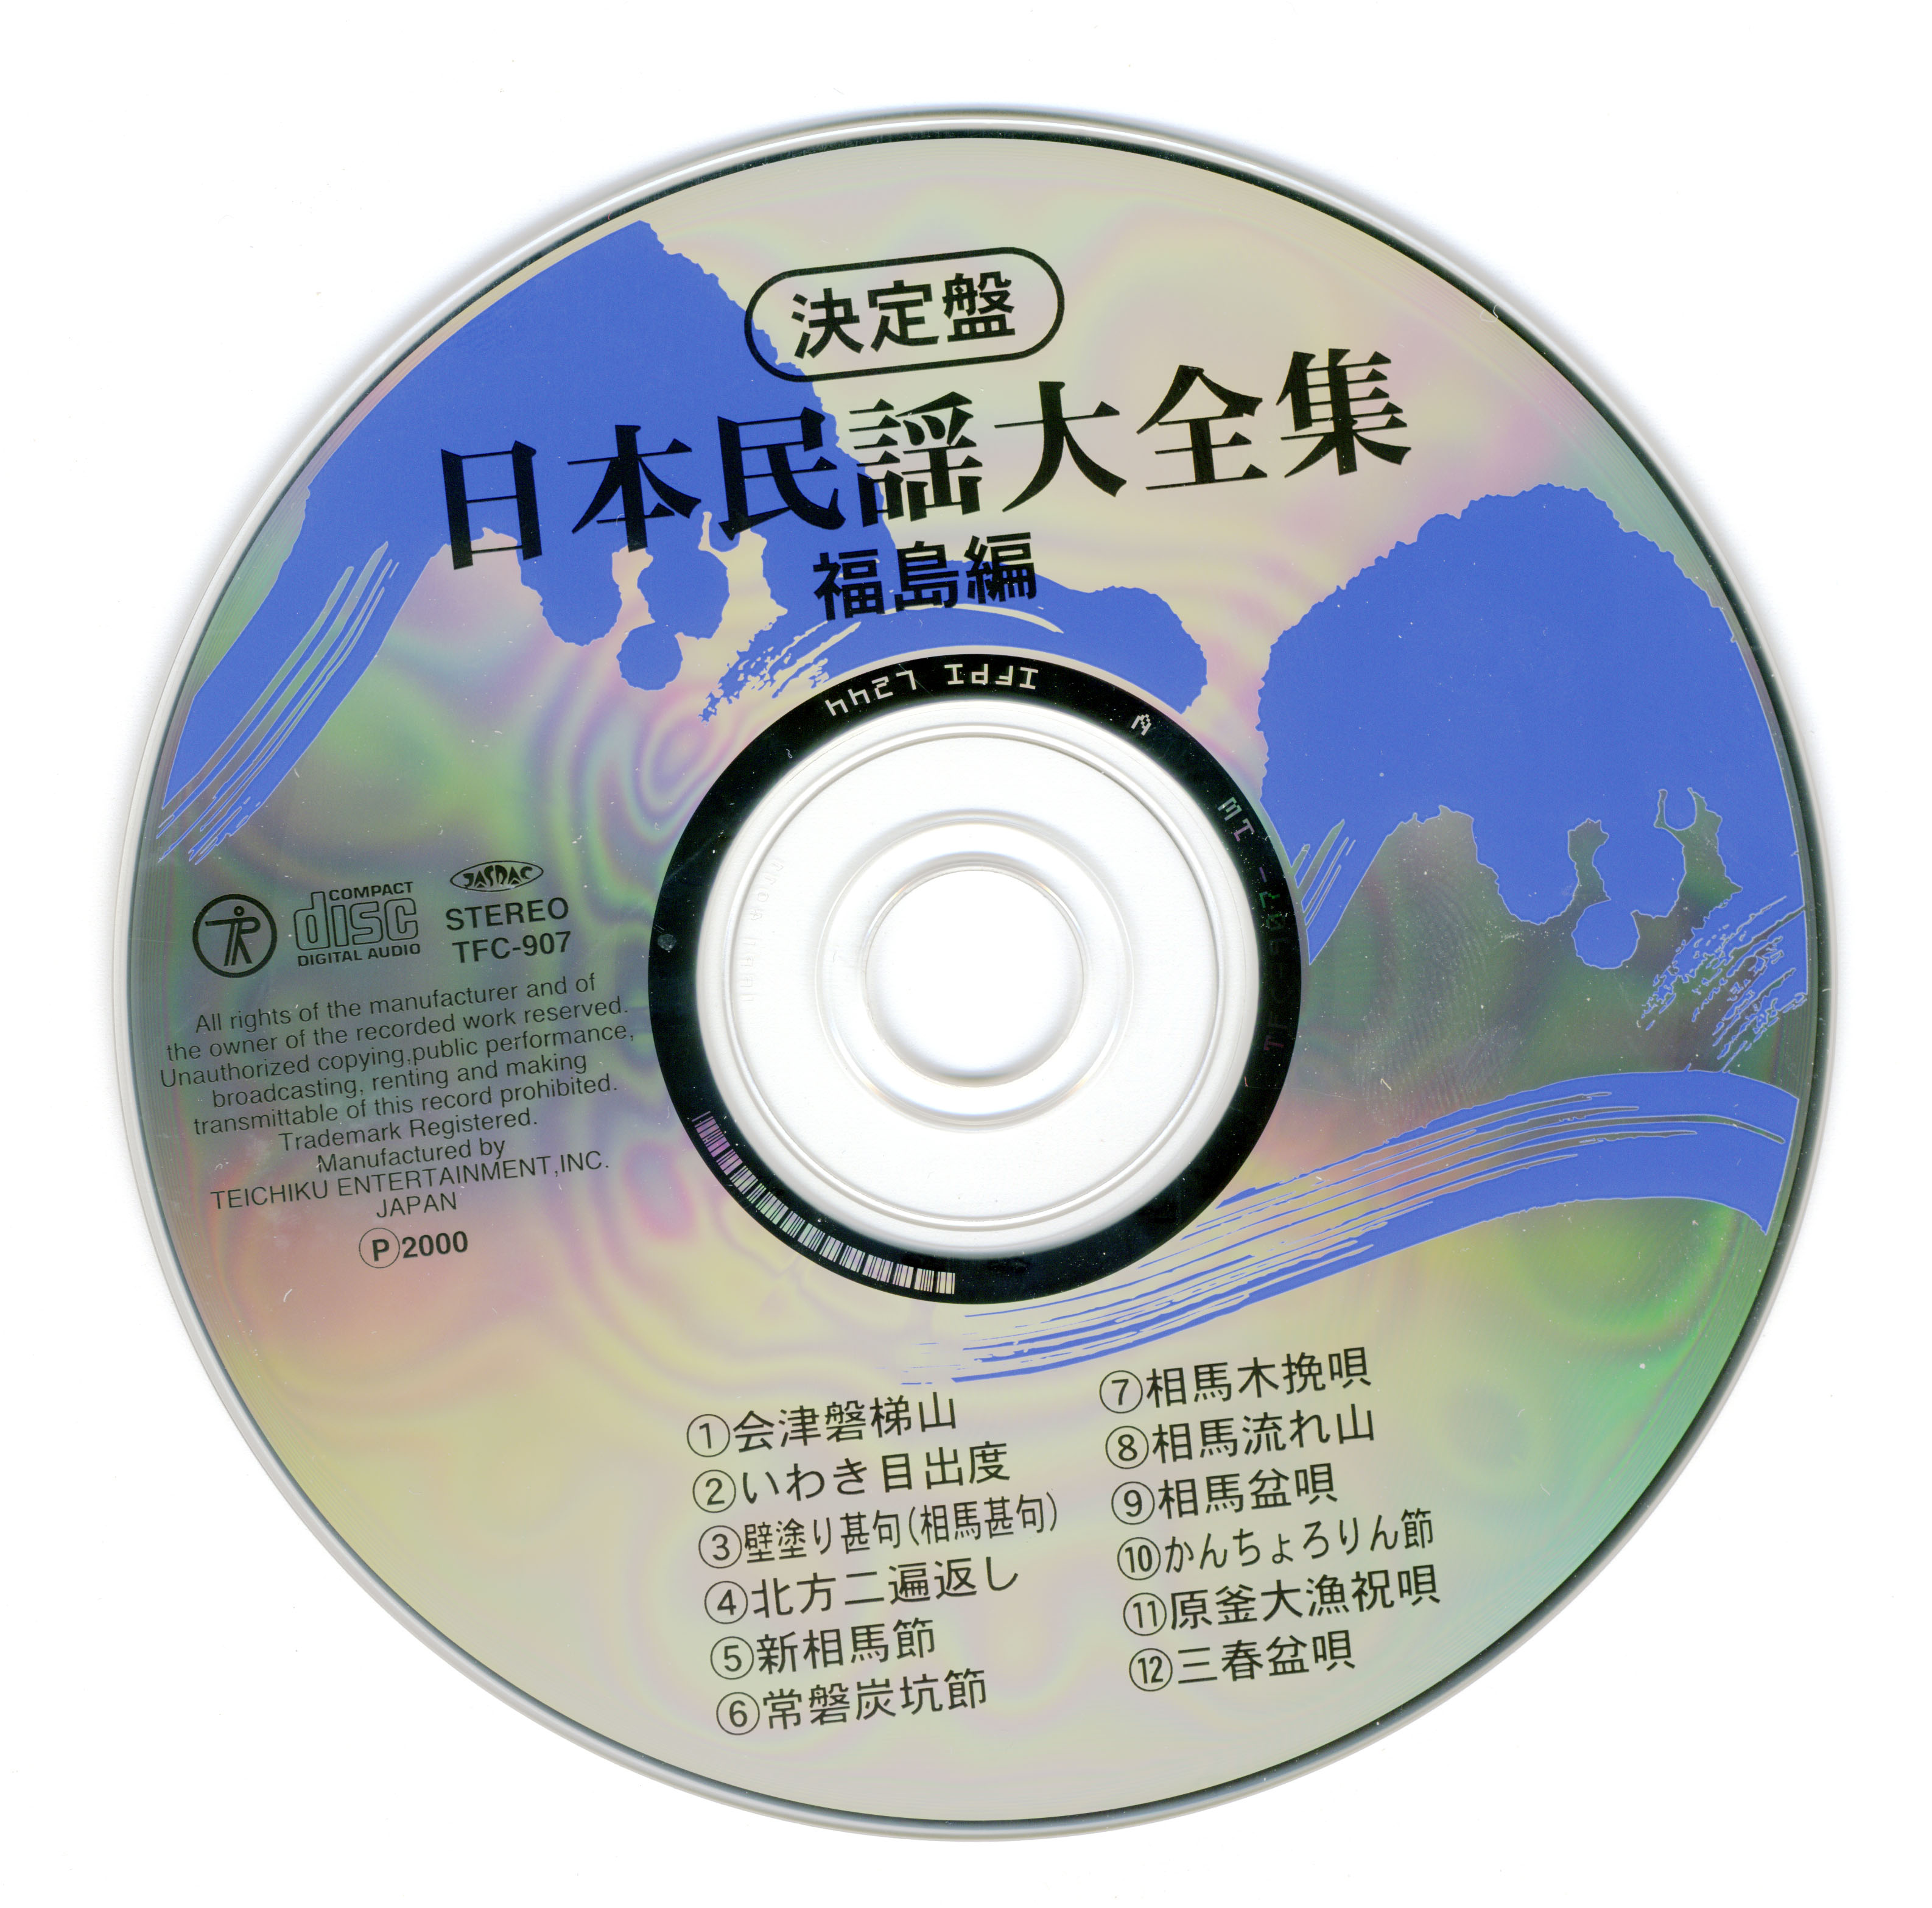 5.disc.jpg